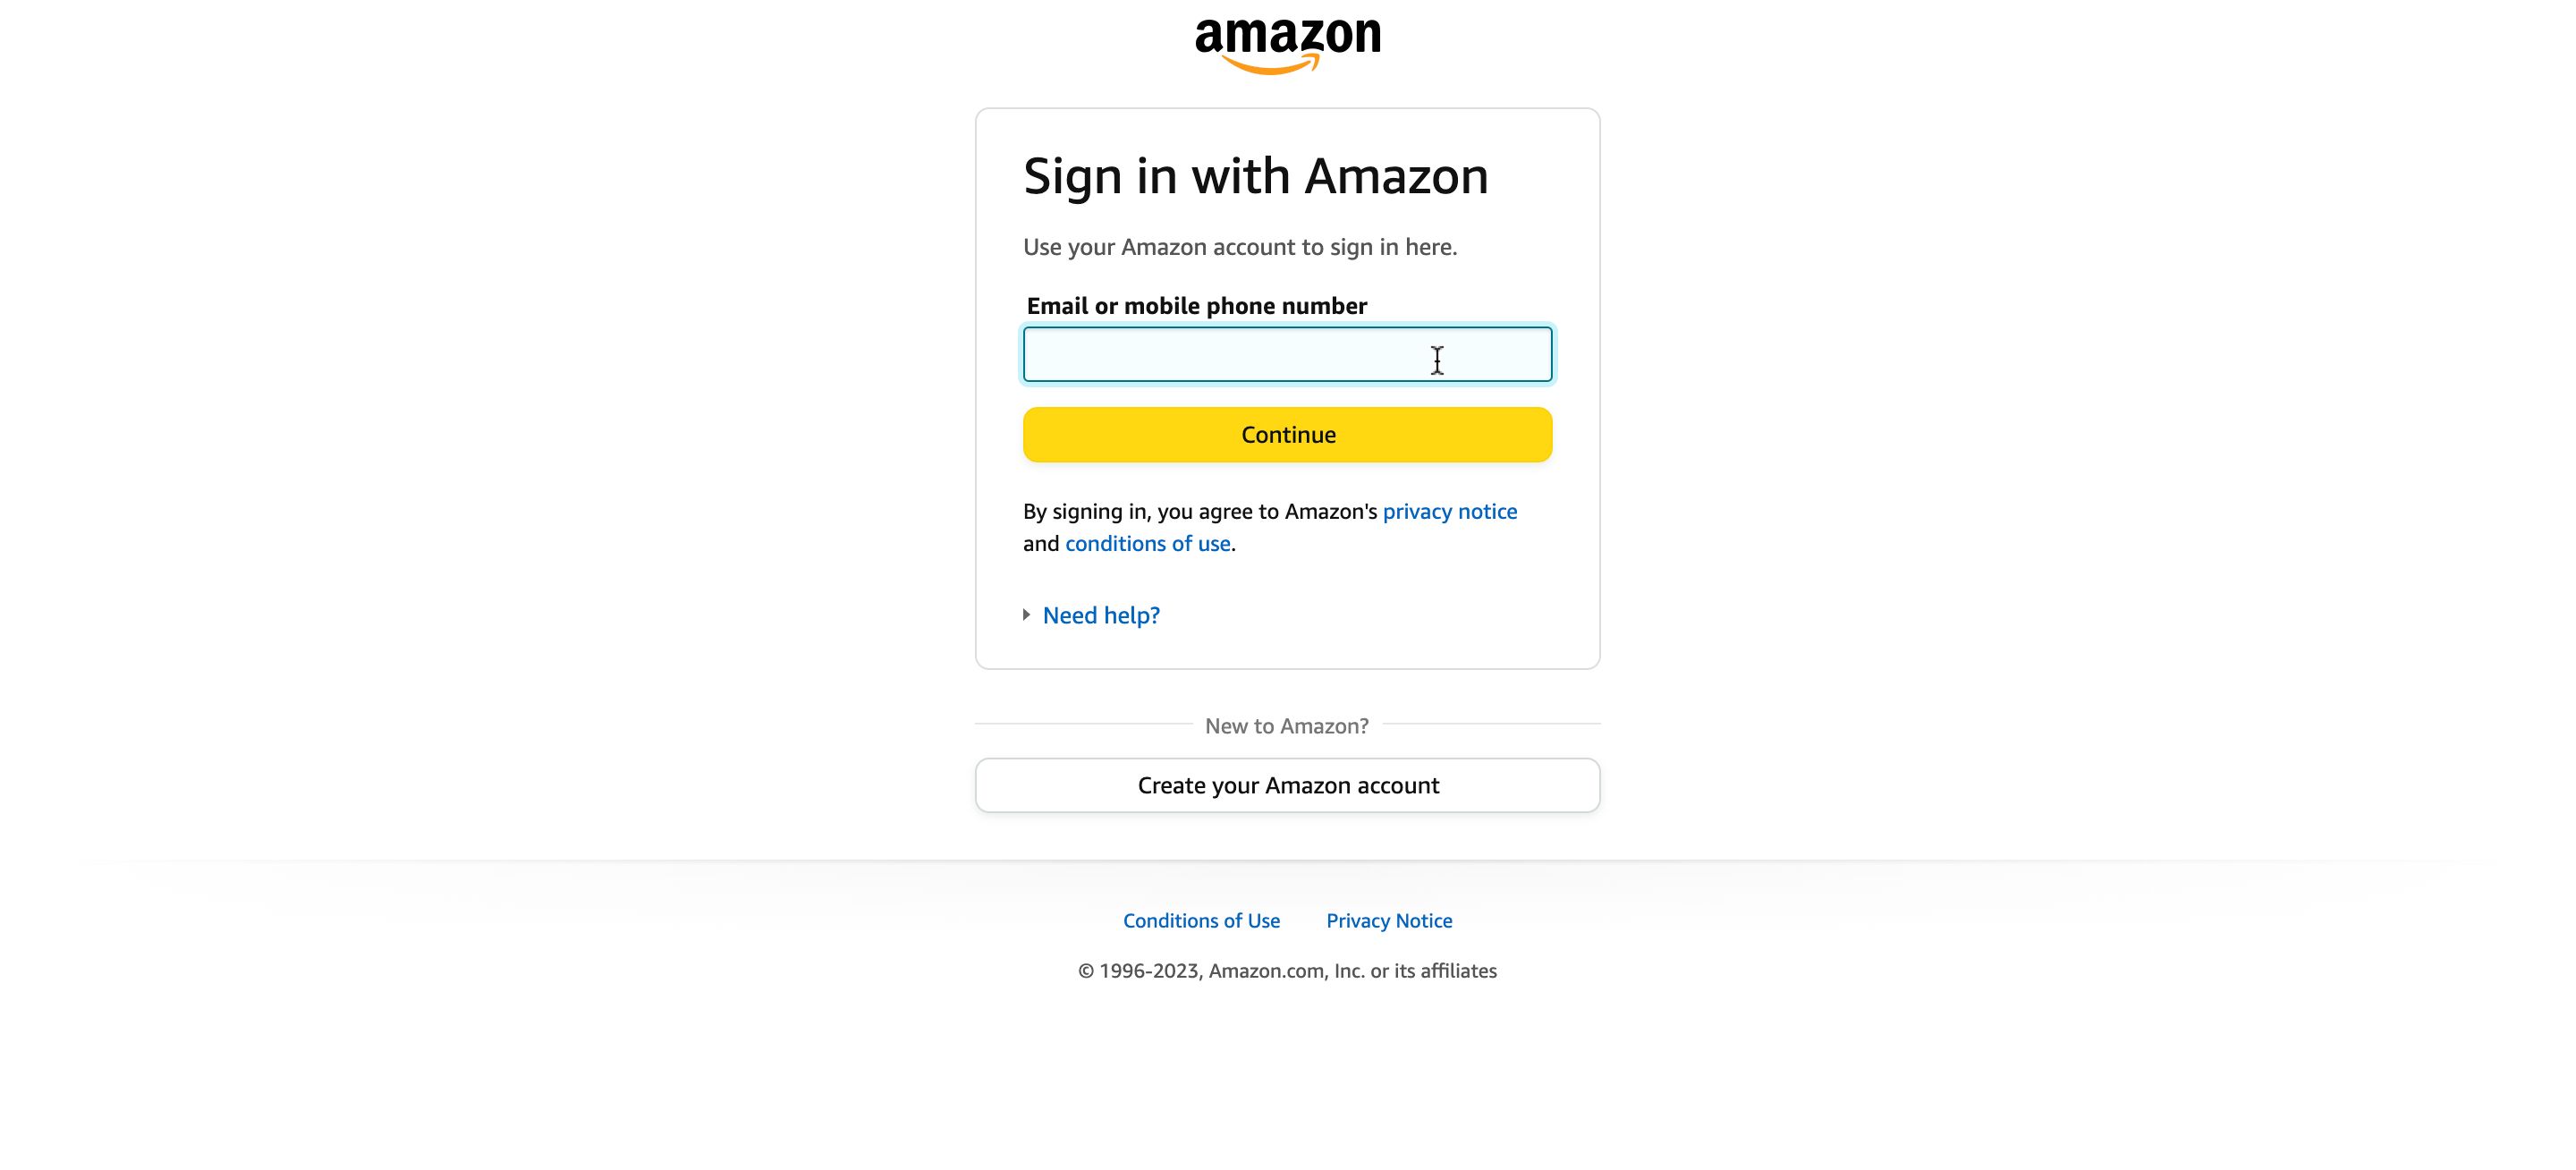 Faça login em sua conta Amazon para concluir a transação